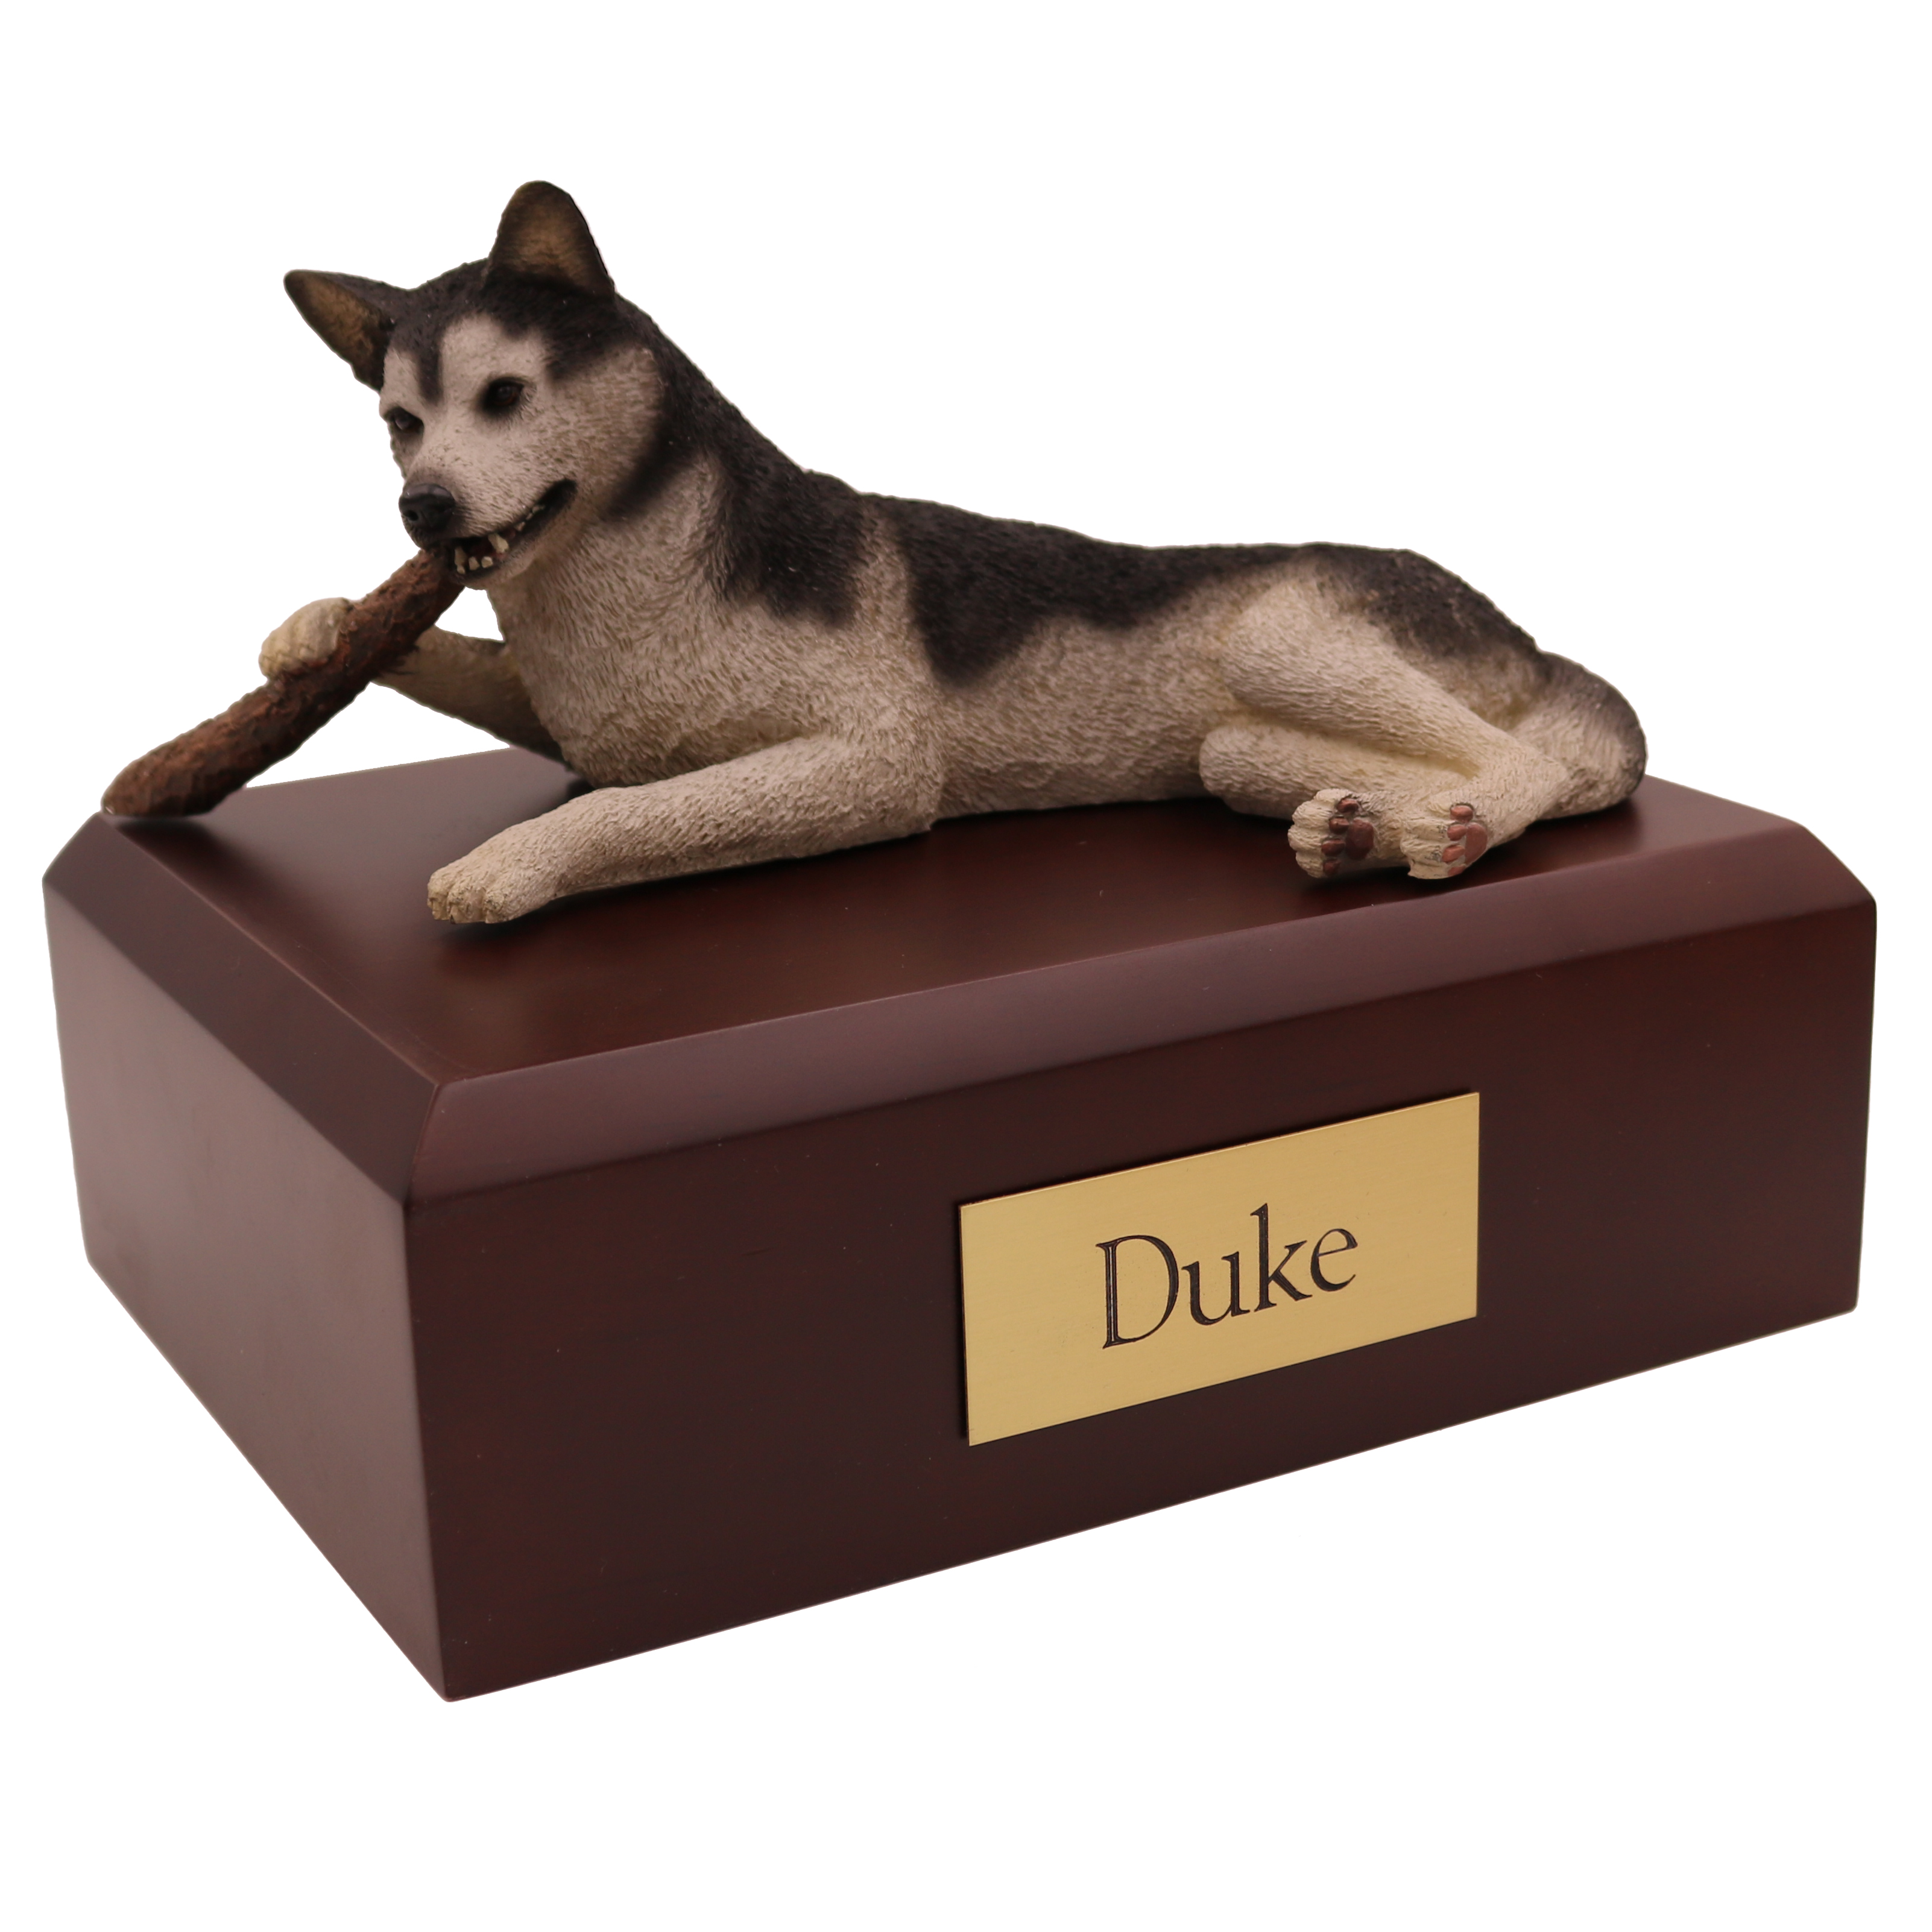 Dog, Husky, Black/White - Figurine Urn